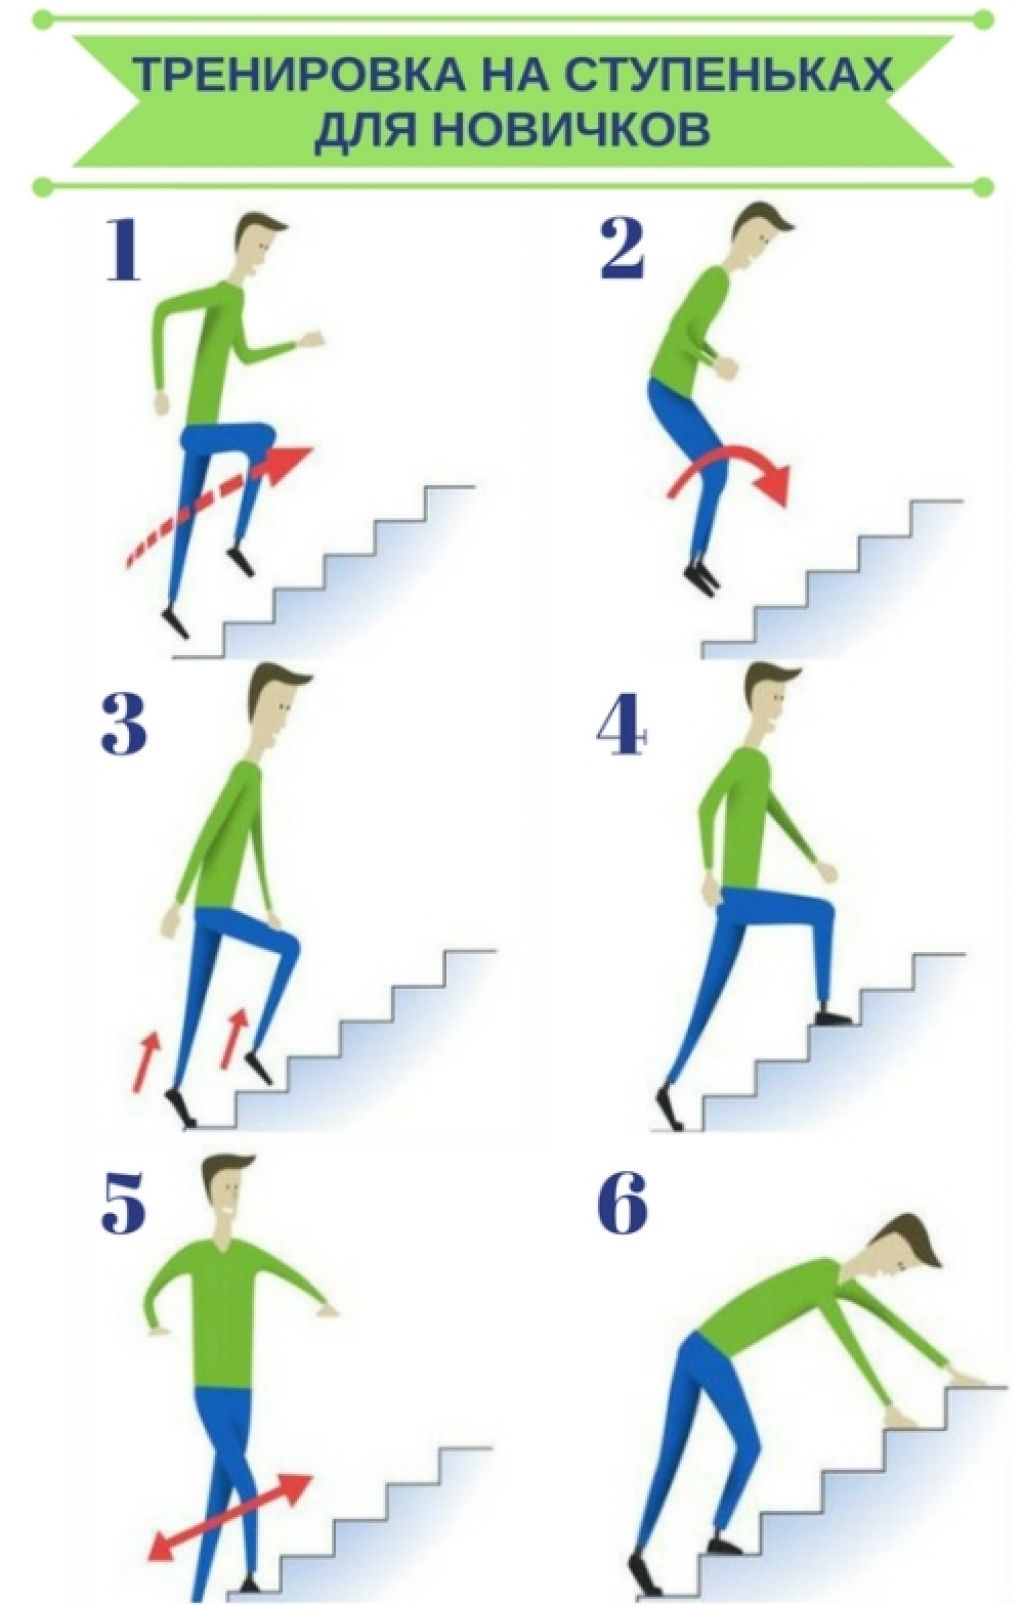 Упражнения на ступеньках лестницы для похудения